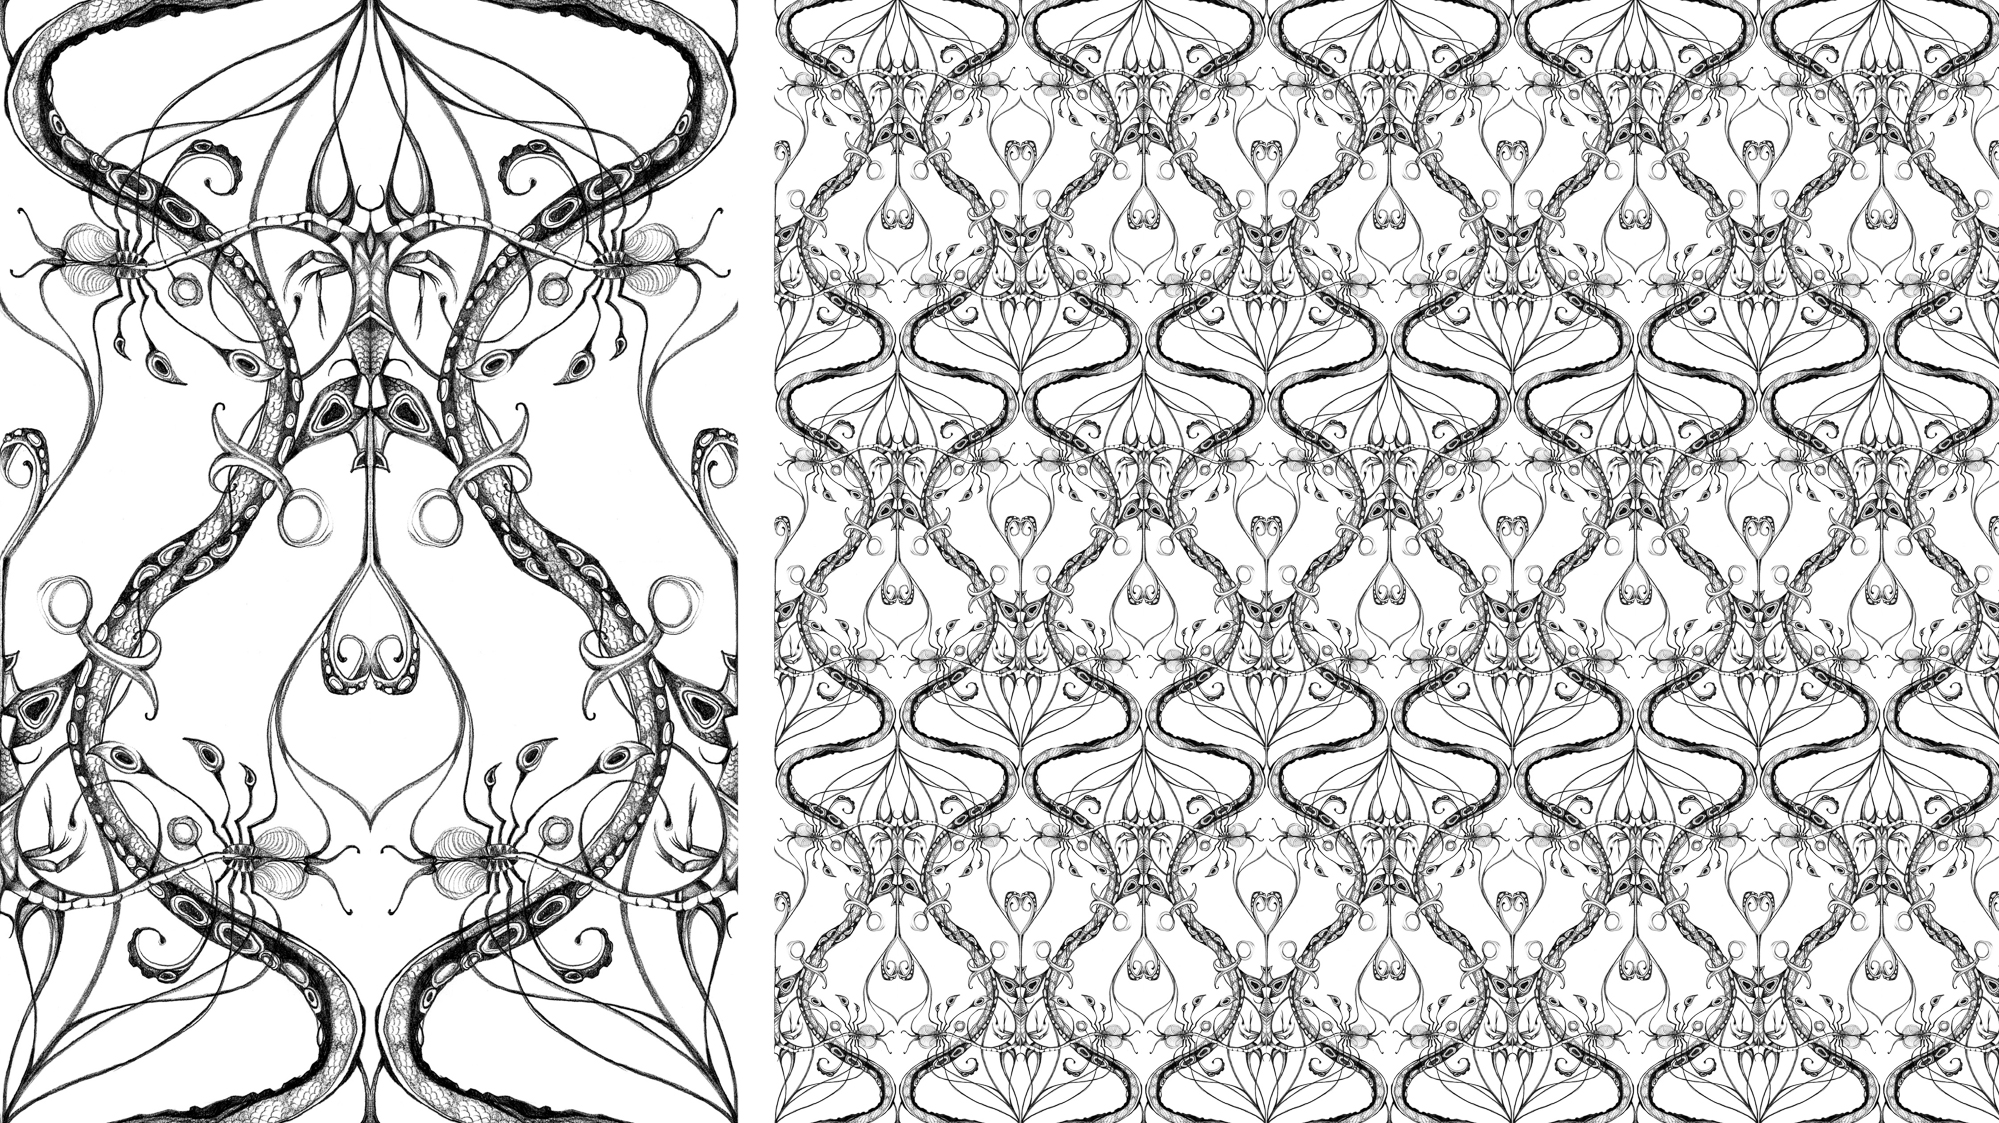 5-Bec_Kilpatrick_Illustration_Patternwallpaper_white